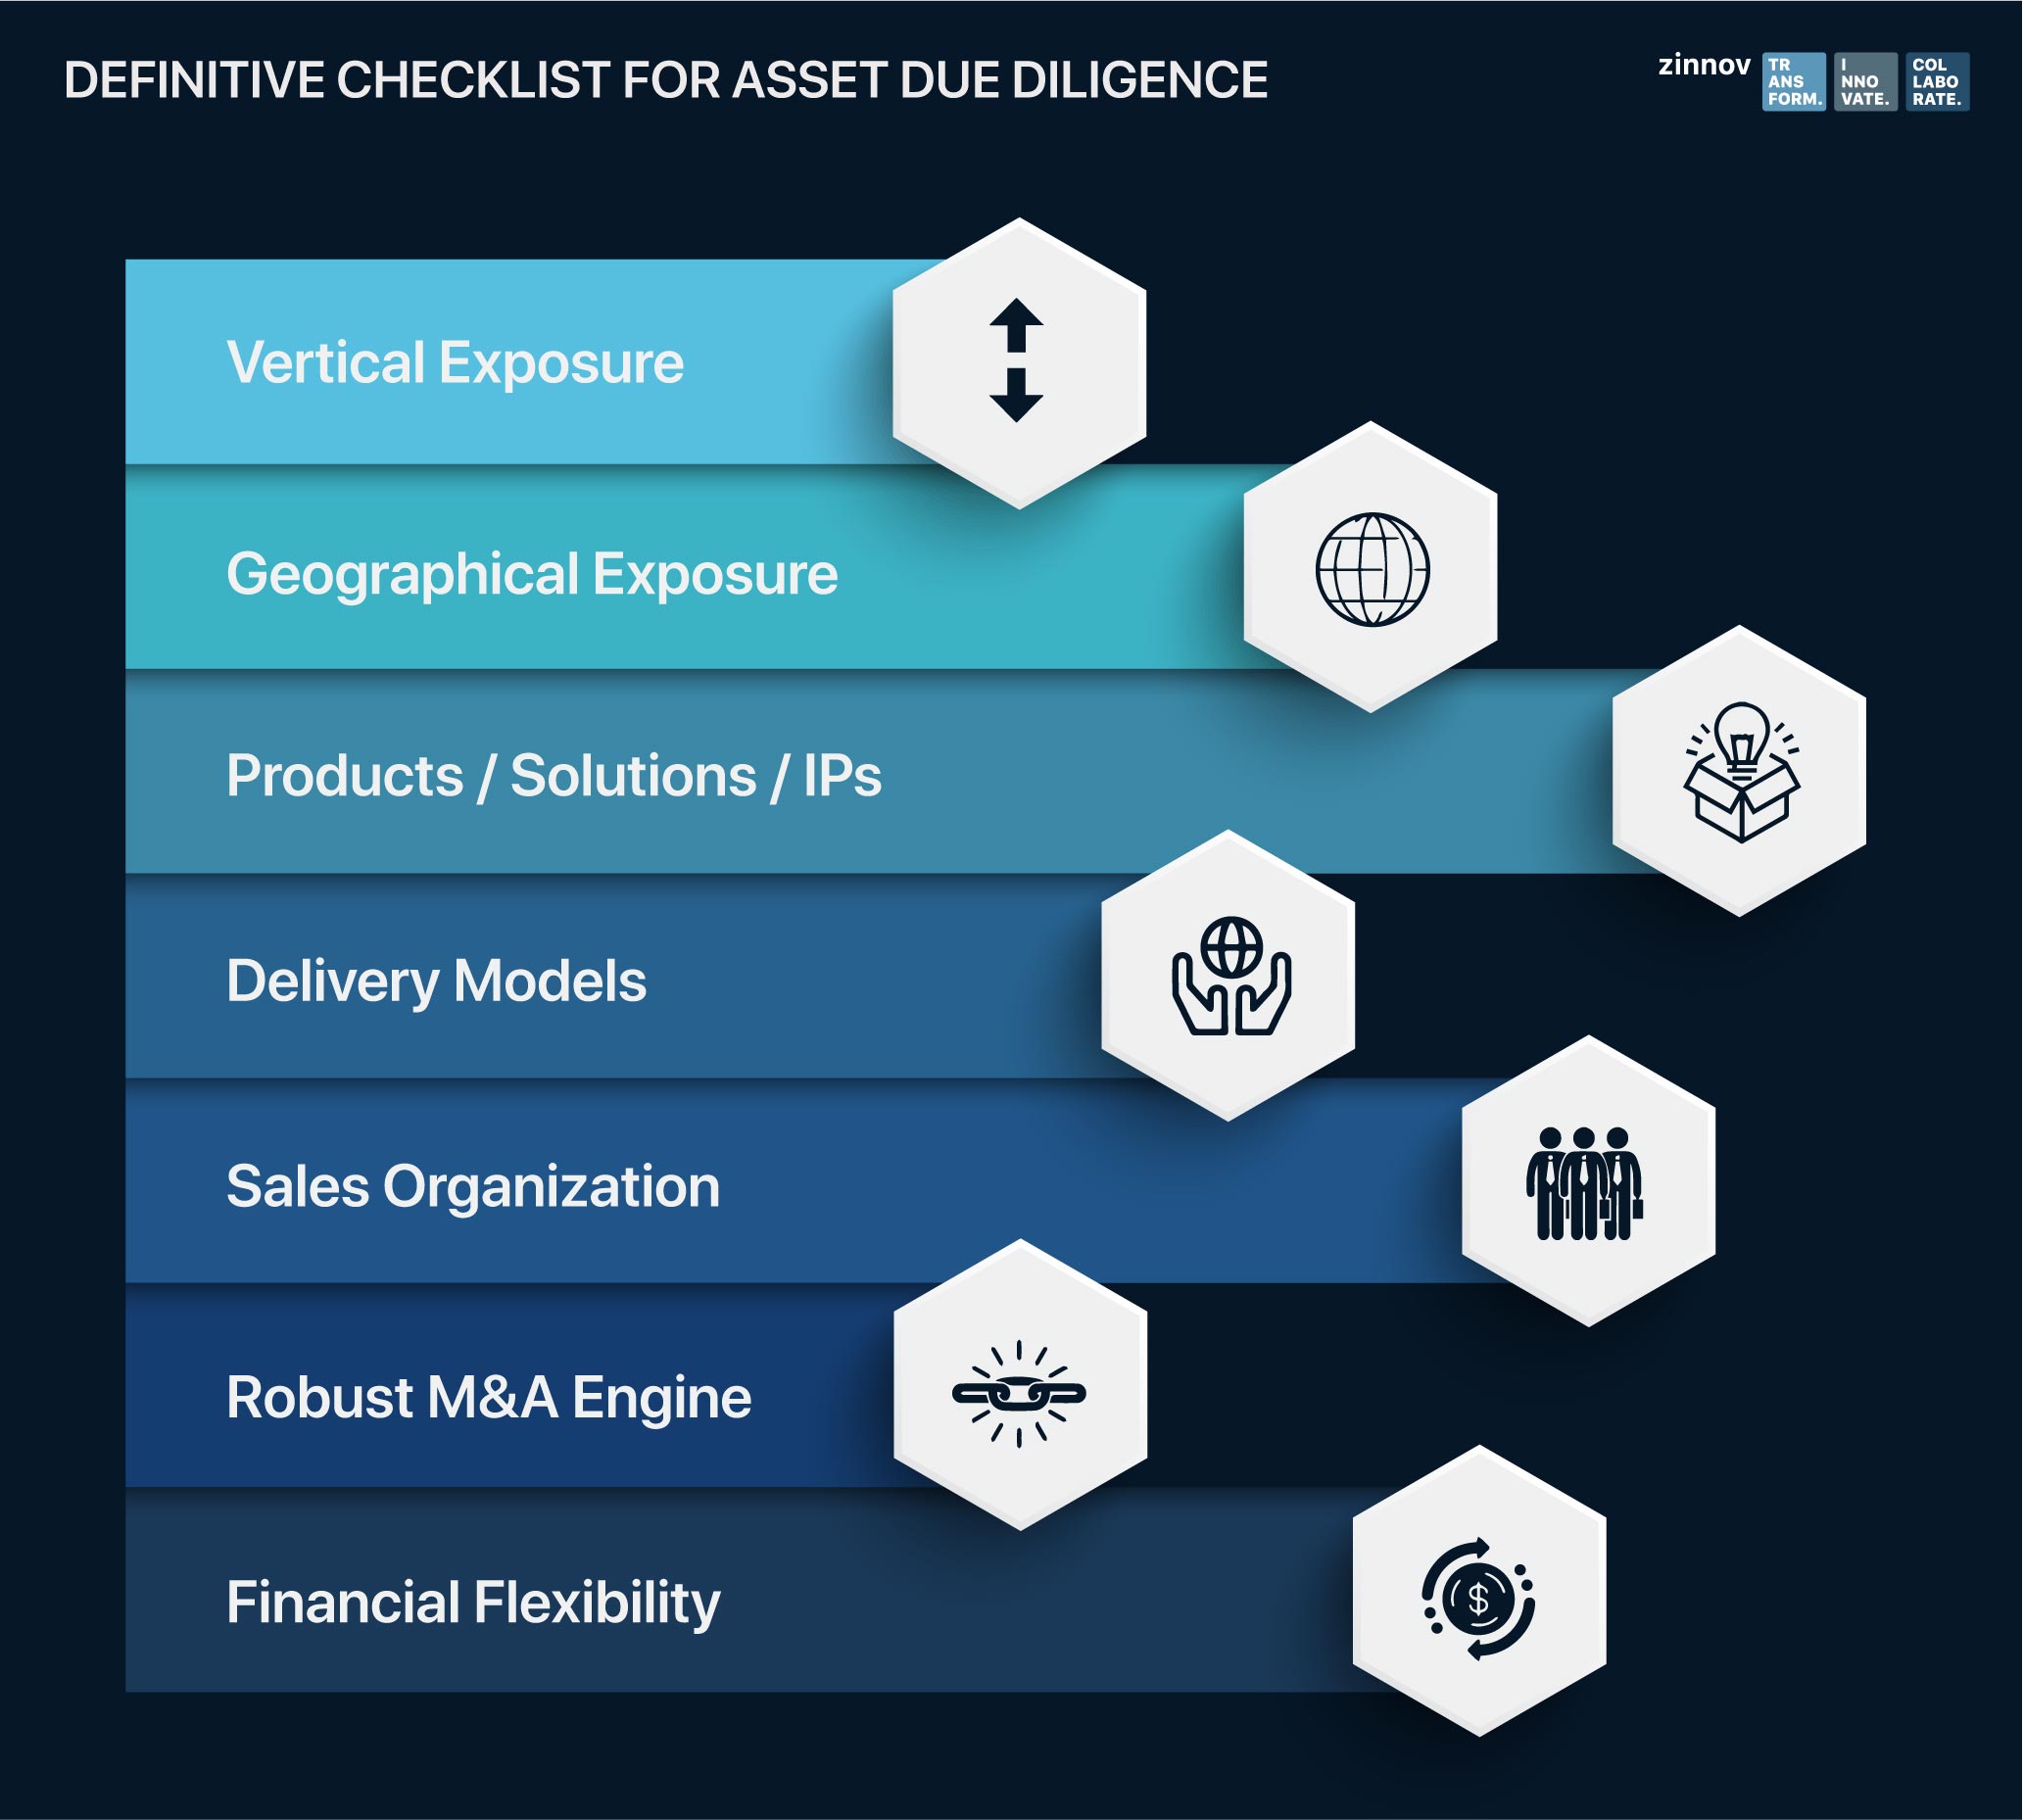 Define Checklist for asset diligence